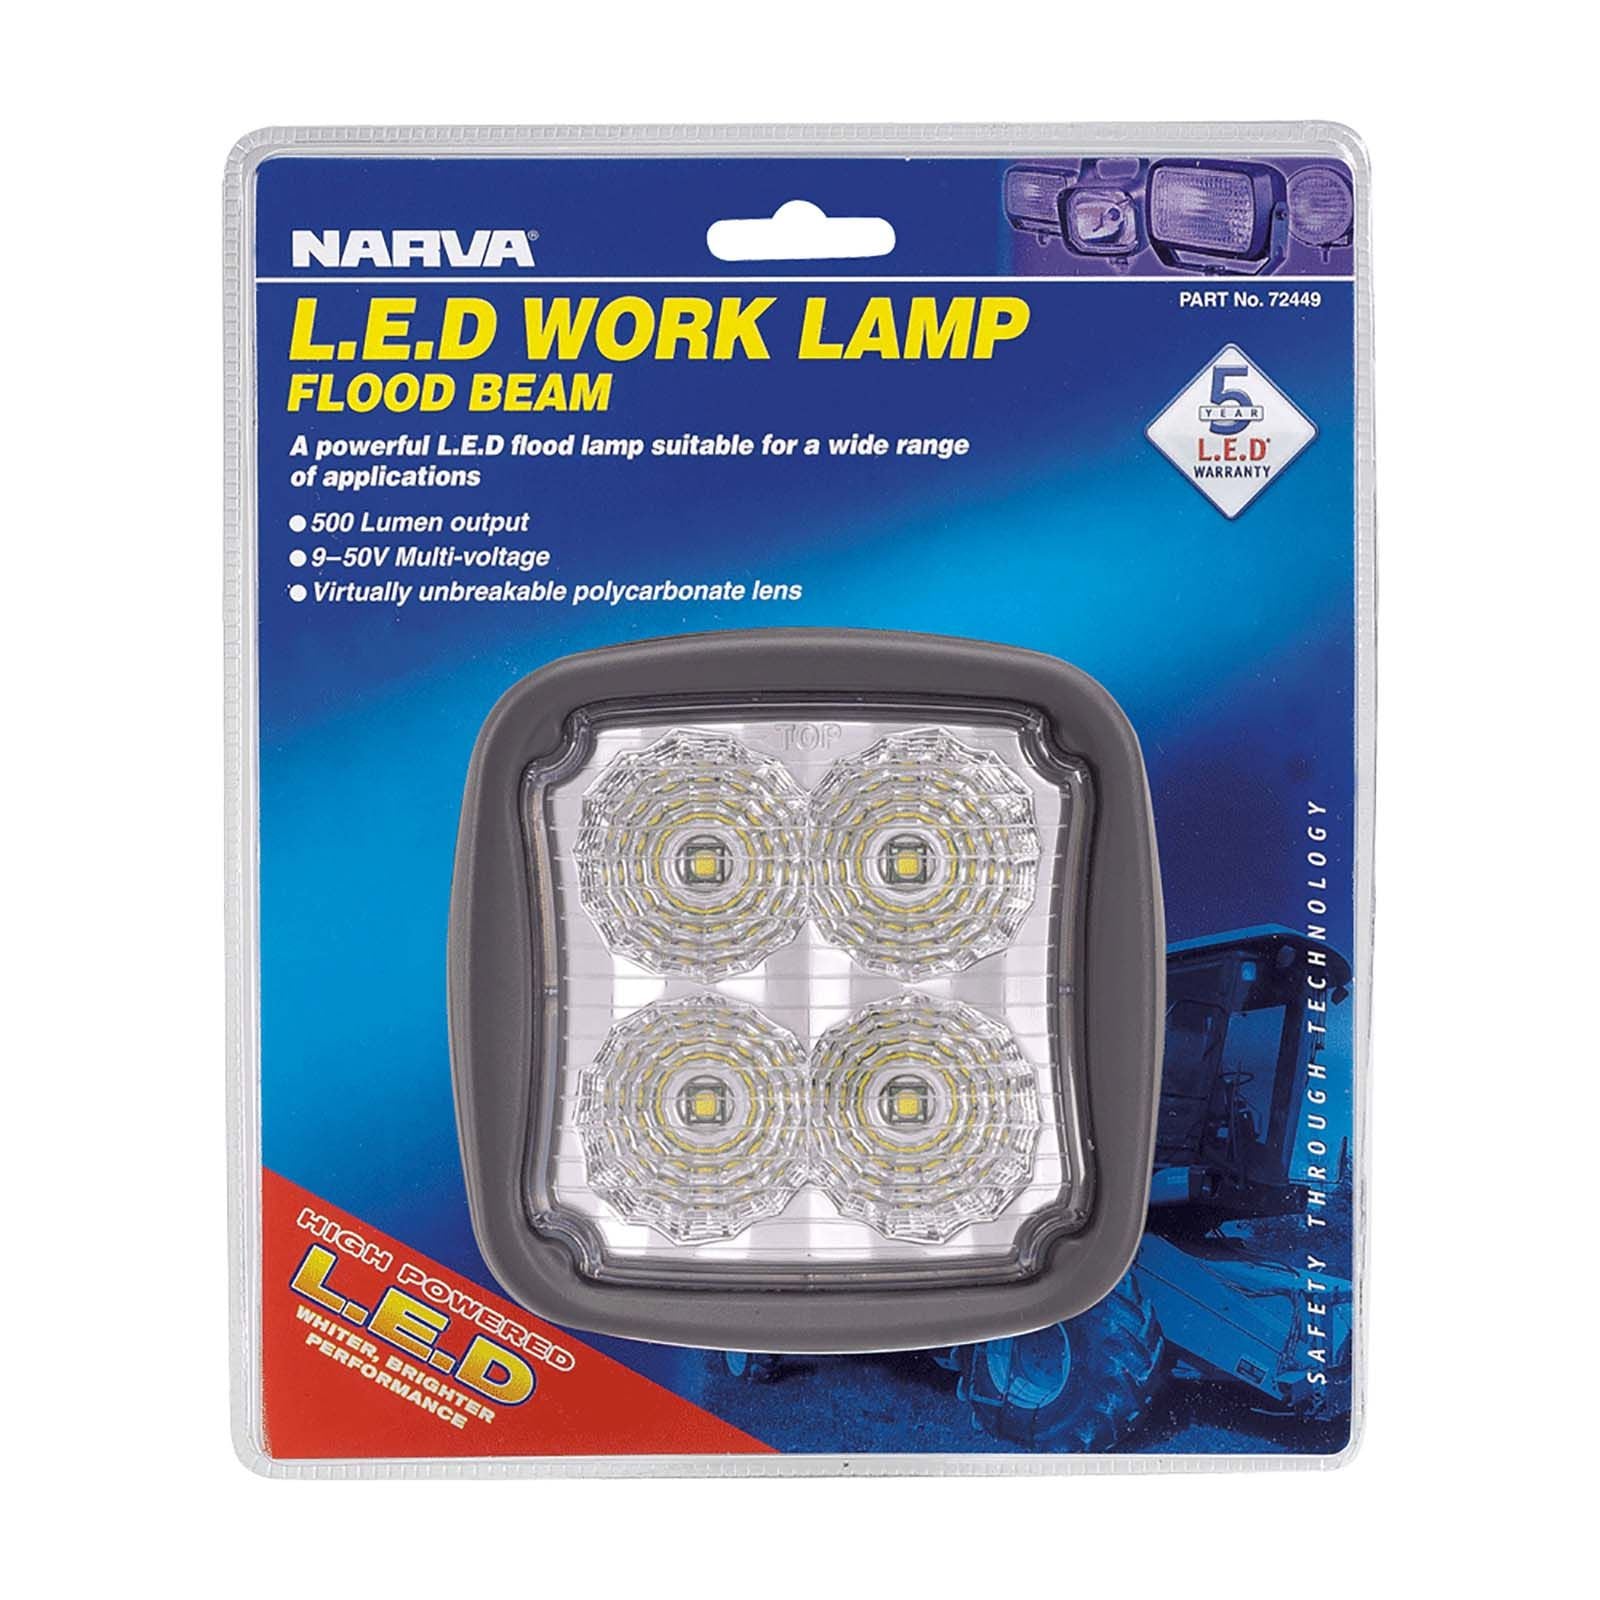 9-64V LED Work Lamp Flood Beam - 2000 lumens